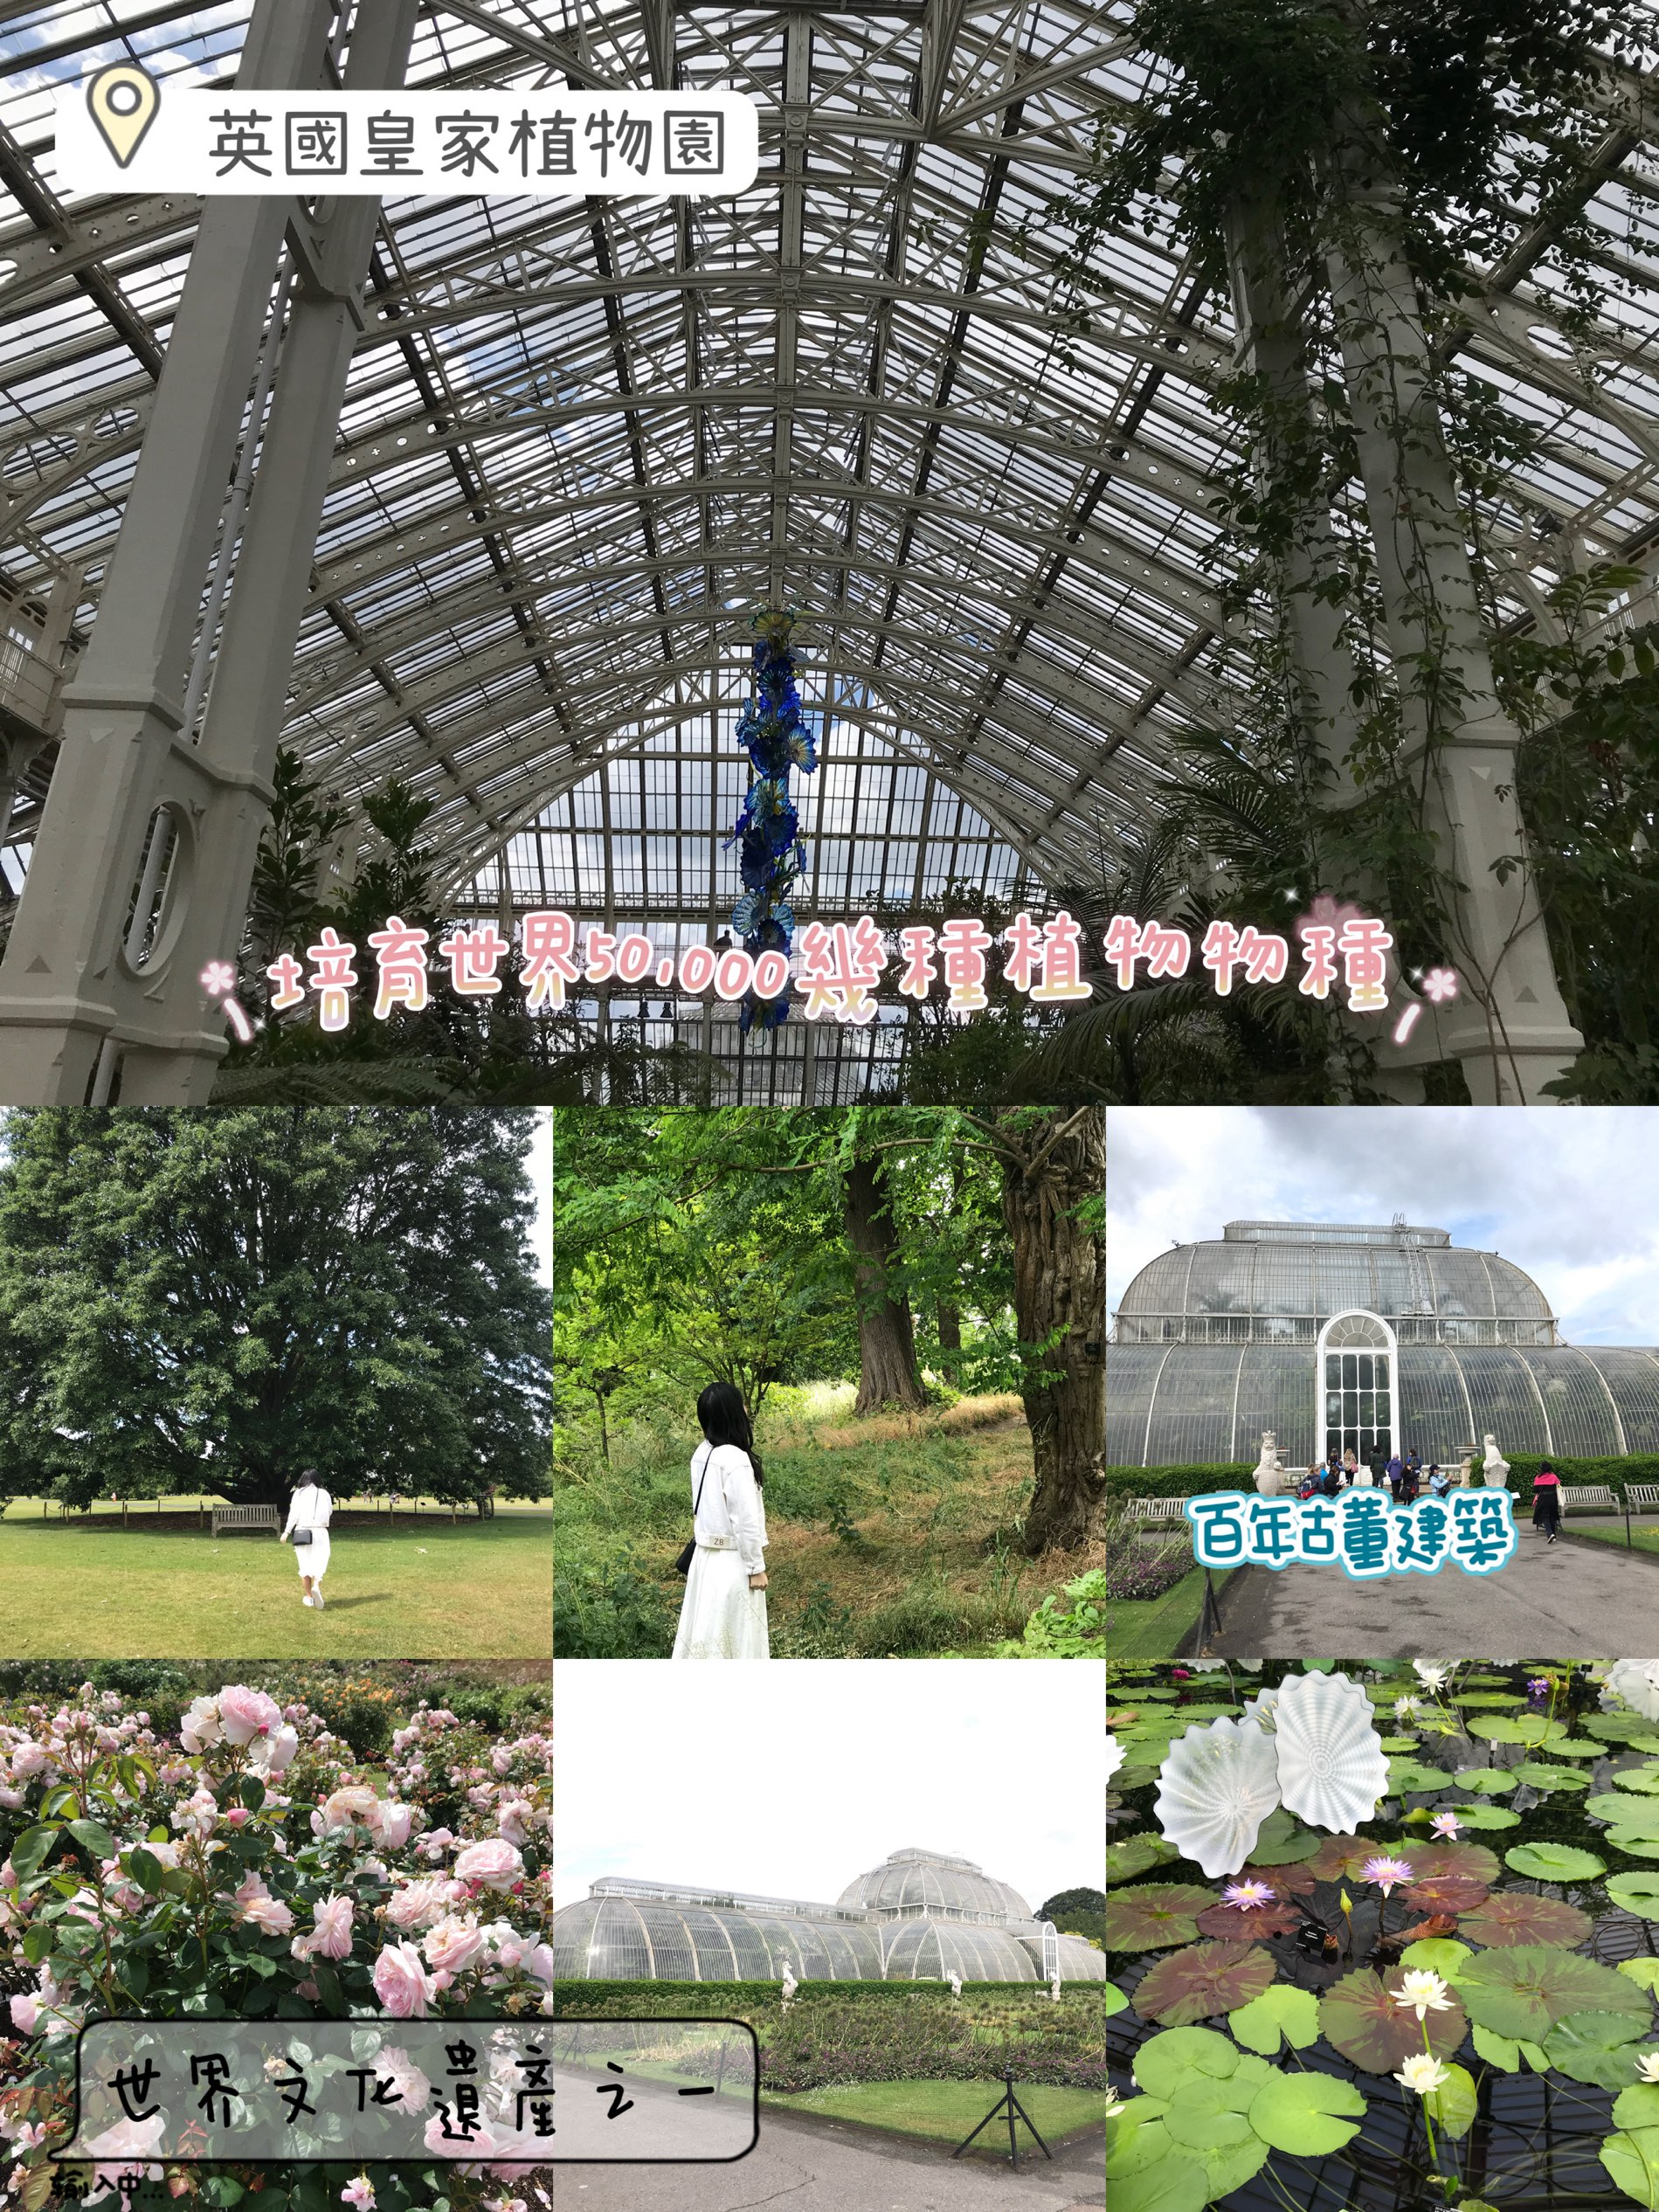 世界文化遗产之Kew Gardens‼️百年温室❤️欣赏大同花卉